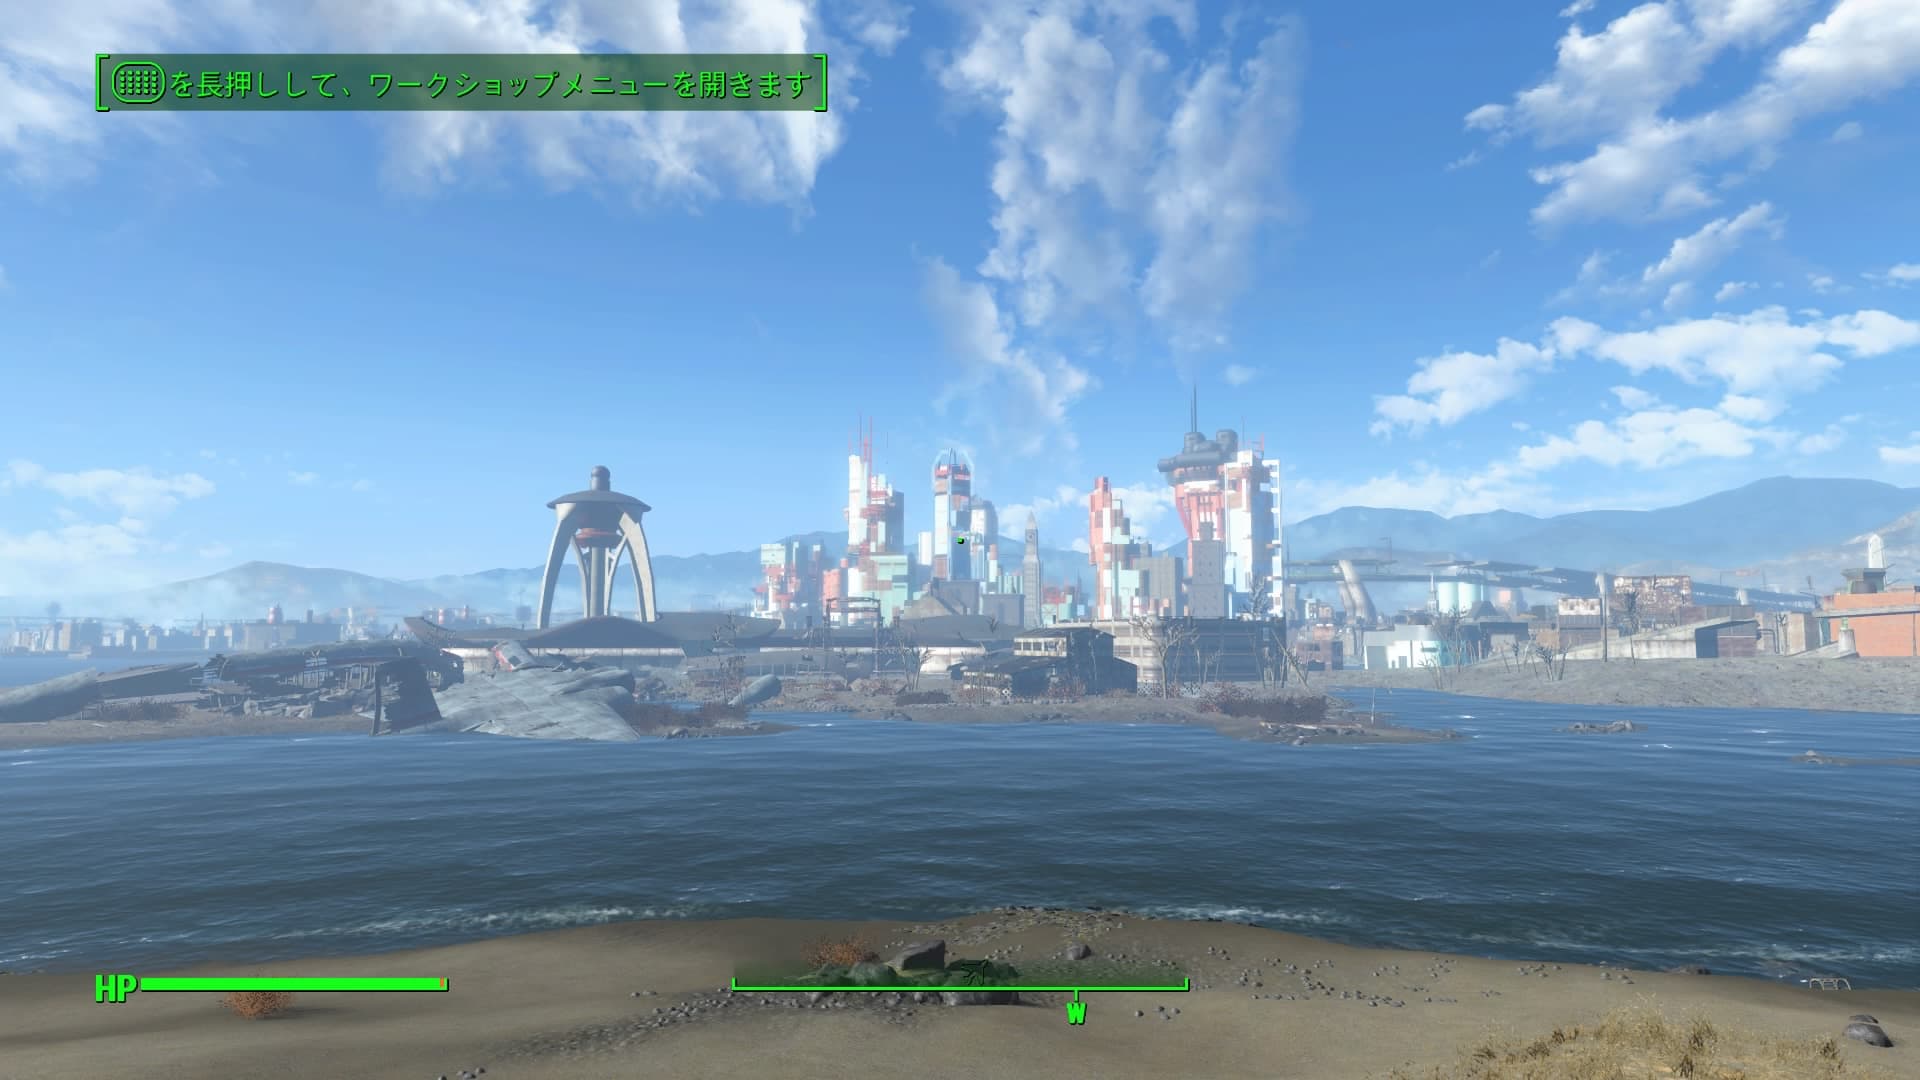 Fallout4 クラフト メインの家を作る まずは拠点の土地探しから ノードハーゲン ビーチが良さそうです あまげー